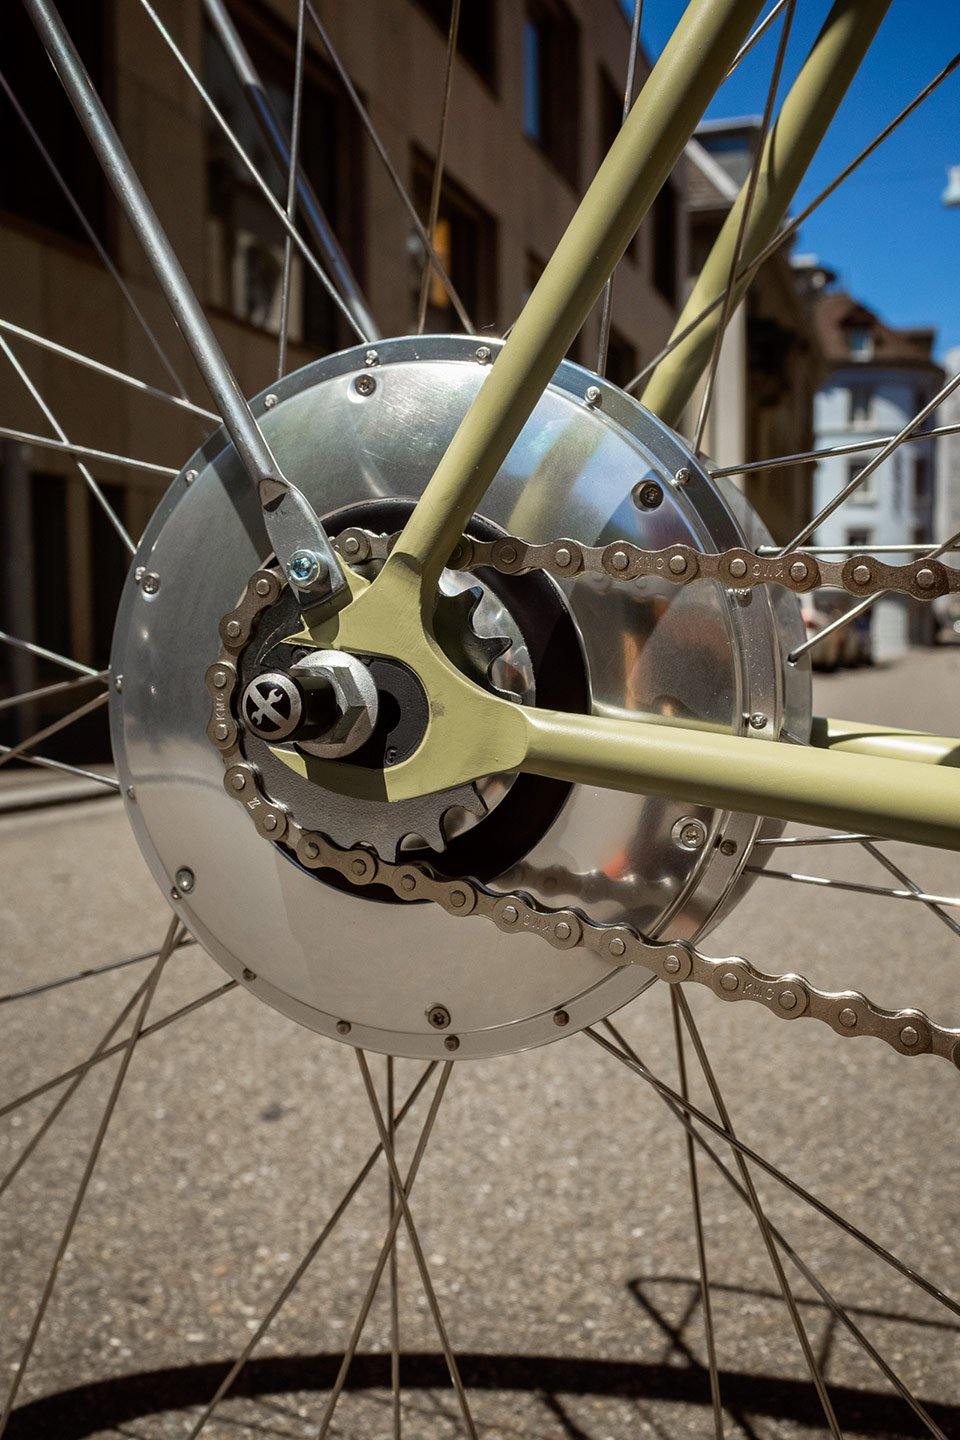 Hybrid wheel - GOrilla . urban cycling